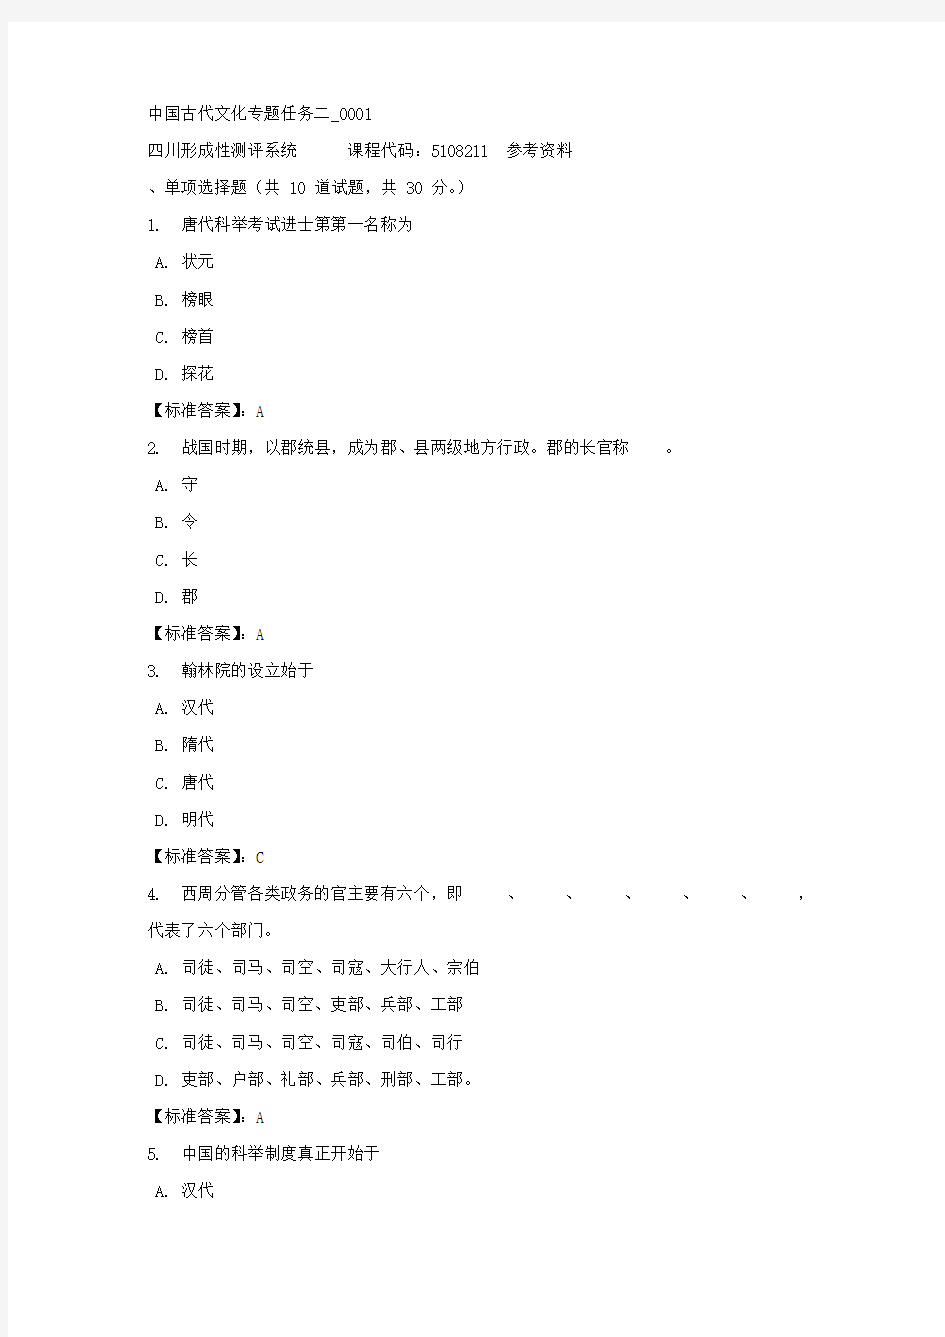 中国古代文化专题任务二_0001-四川电大-课程号：5108211-标准答案